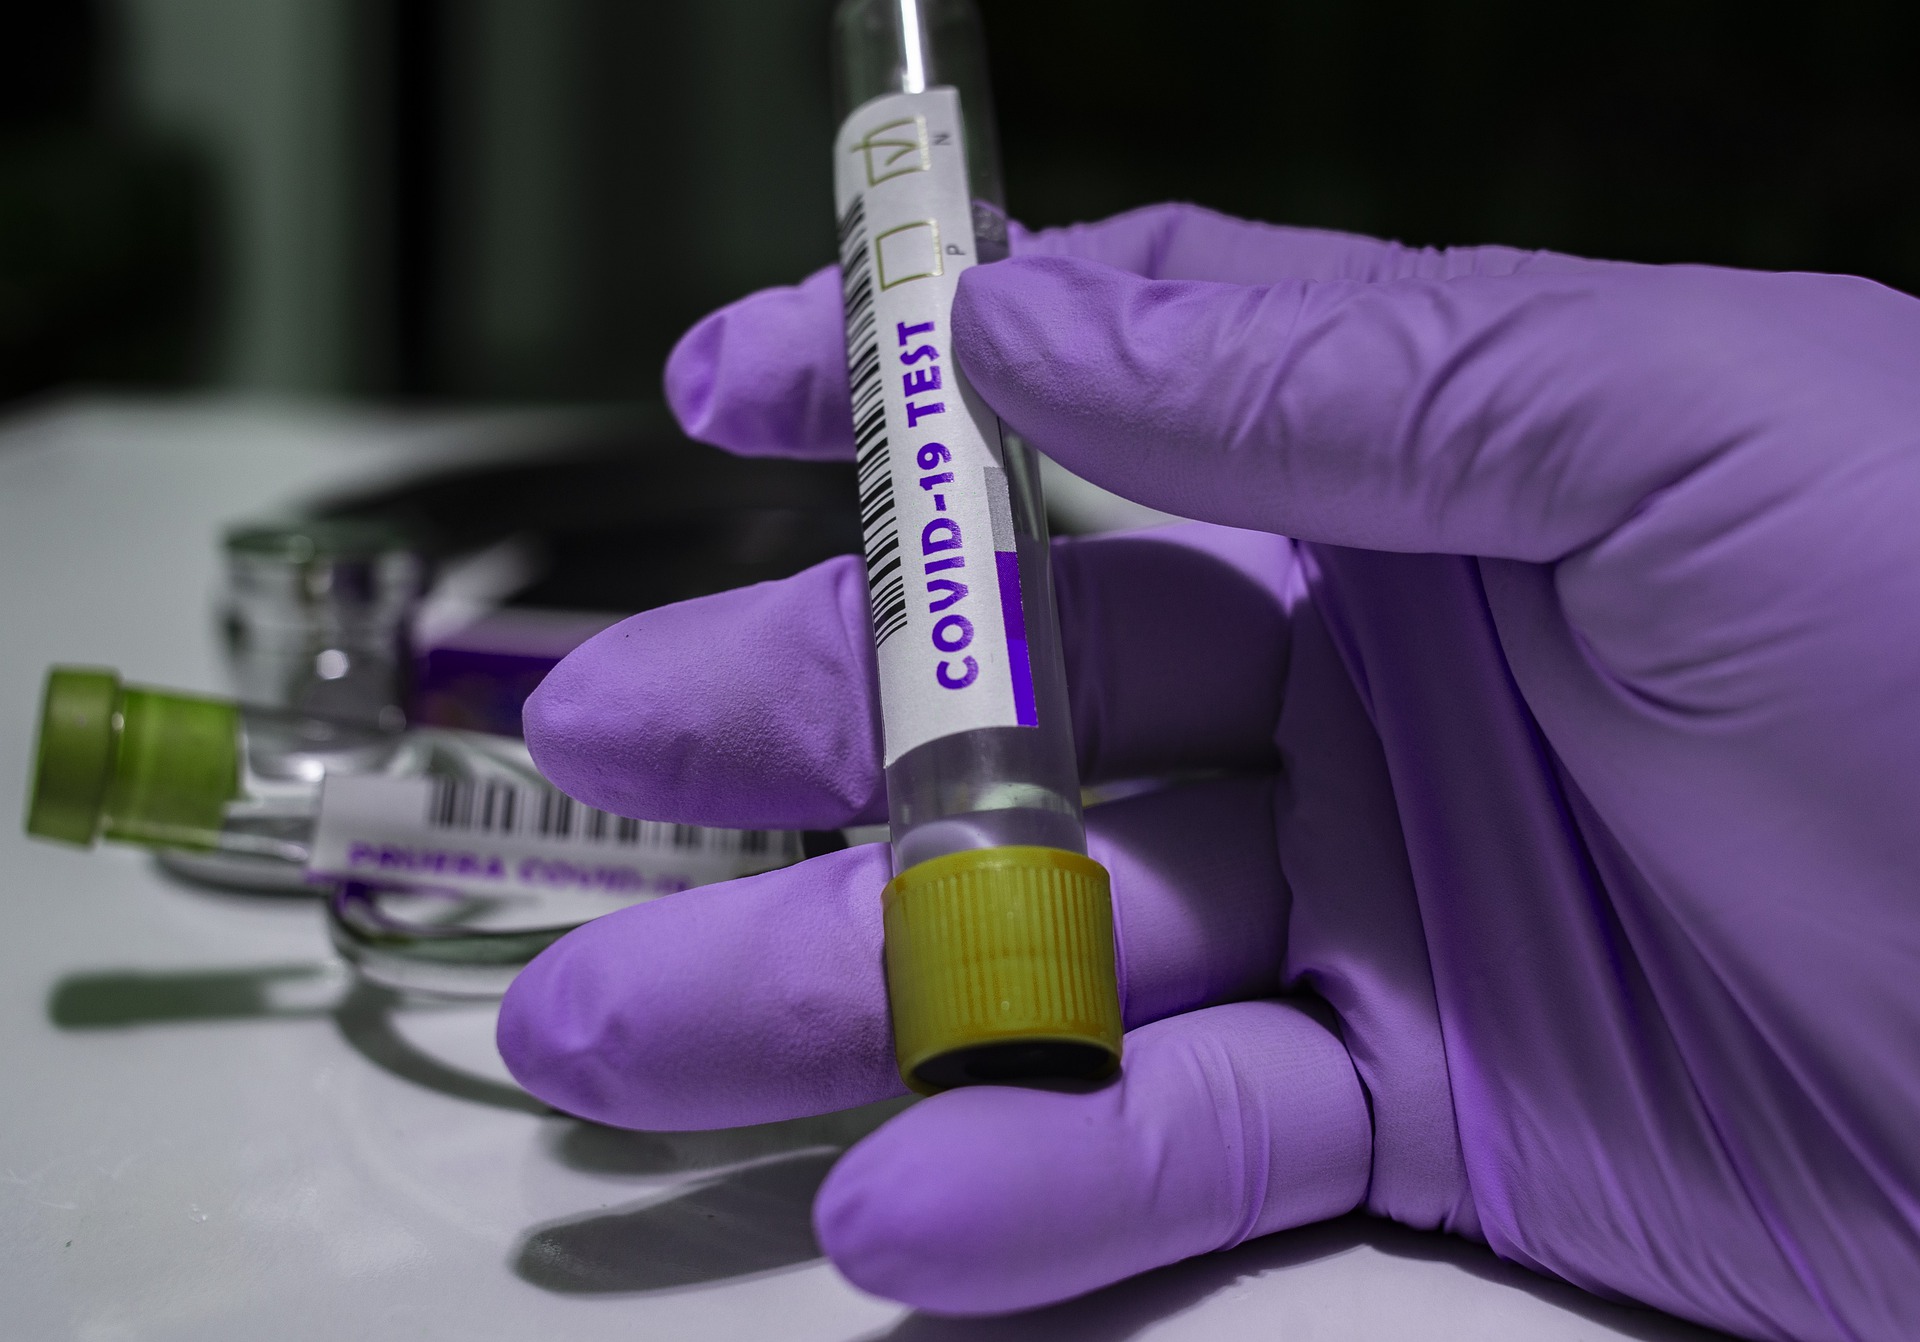 Coronavirus: in Toscana 544 nuovi casi. Sette i decessi con un’età media di 82,3 anni